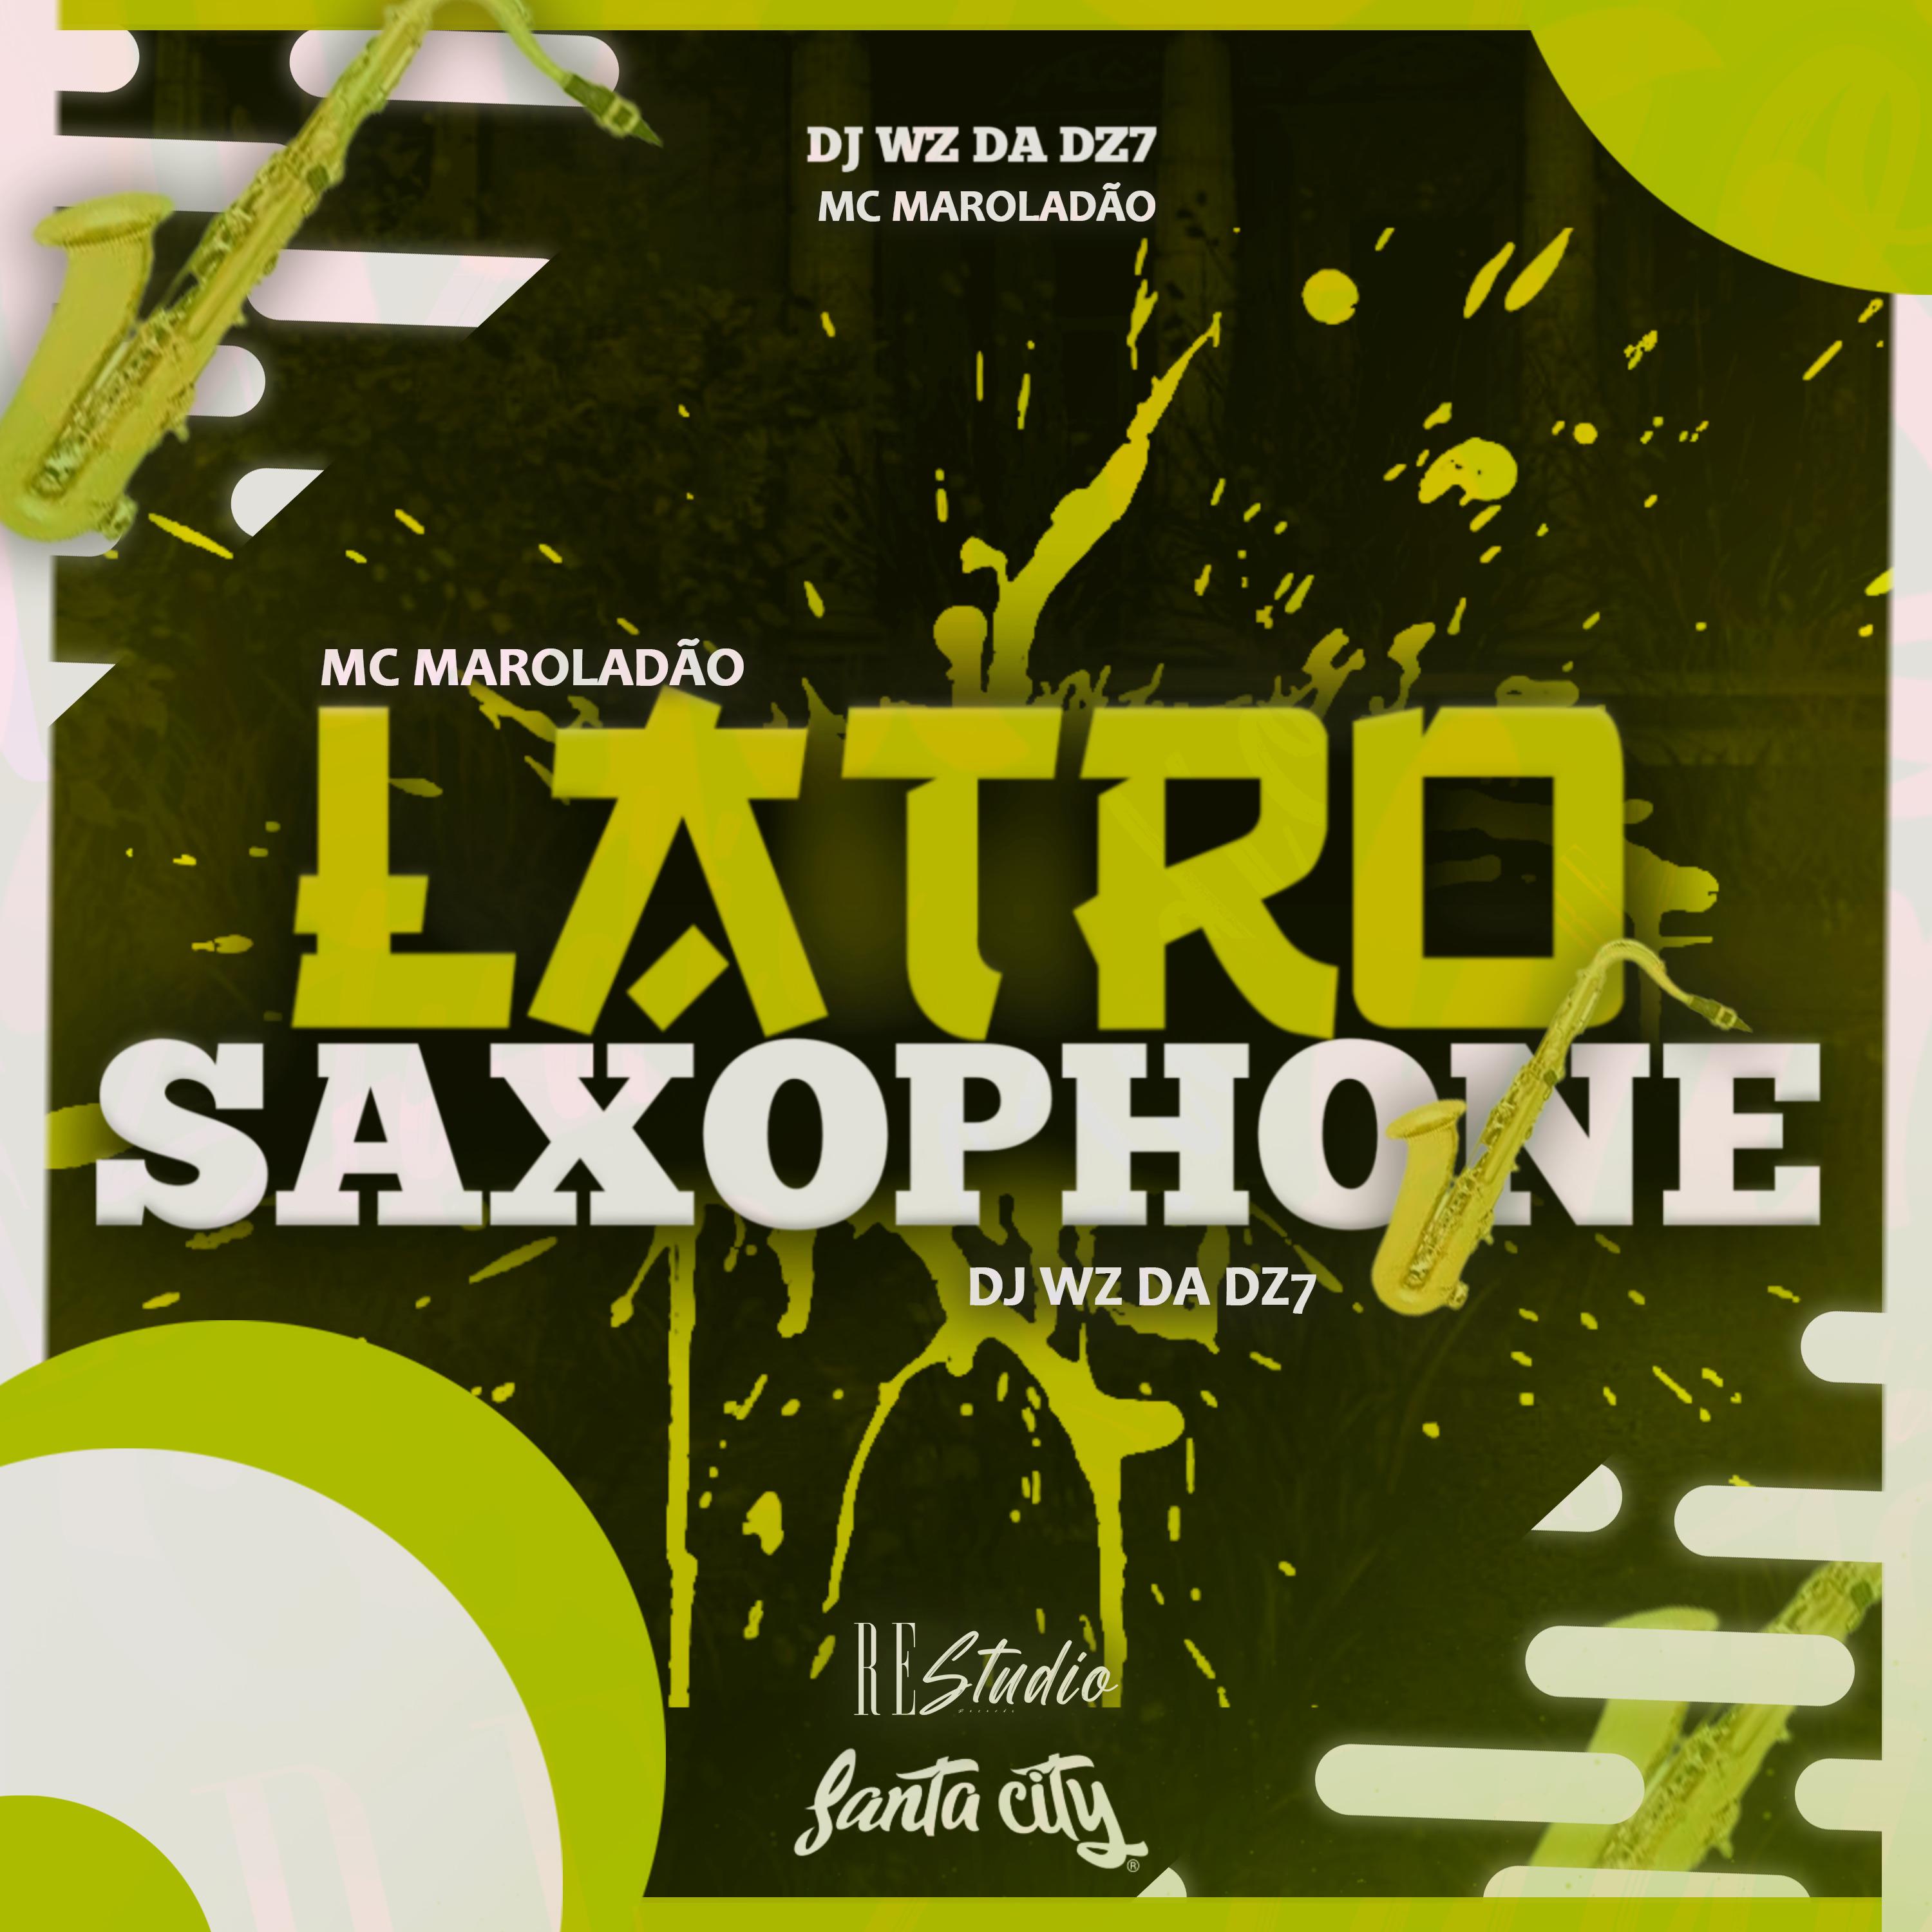 DJ Wz Da Dz7 - Latro Saxophone